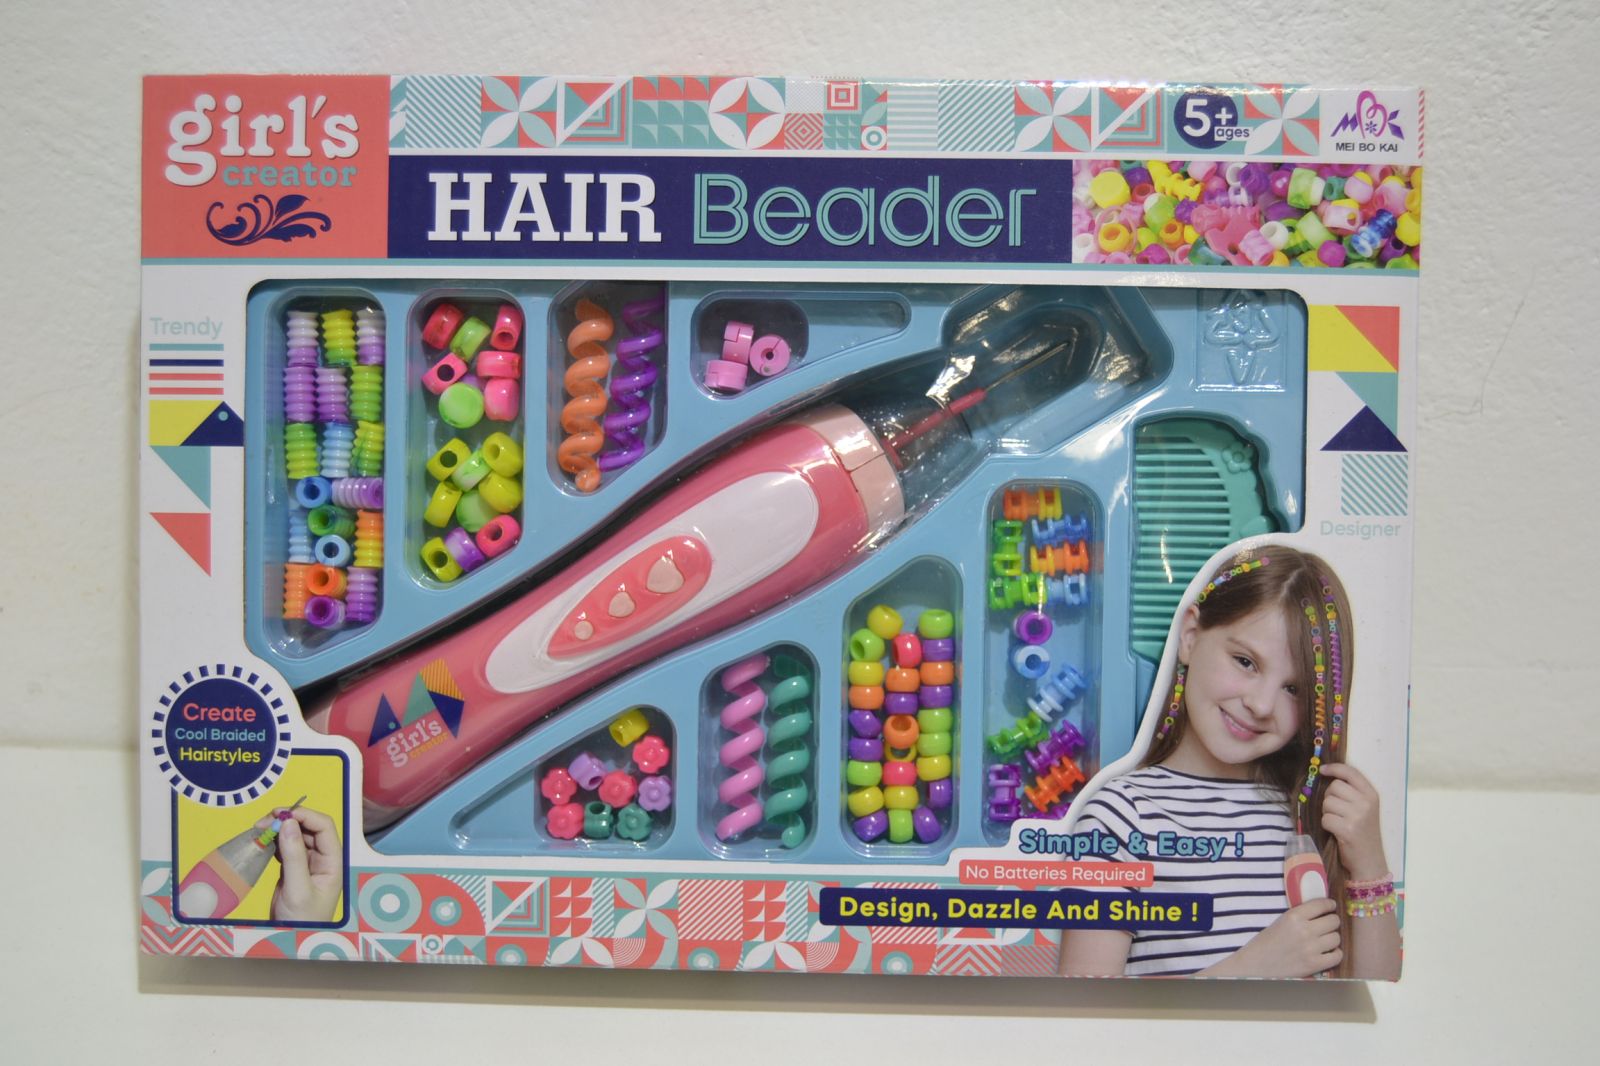 Copánkovač, navlékač korálků - Hair Beader 232K, Girls creator